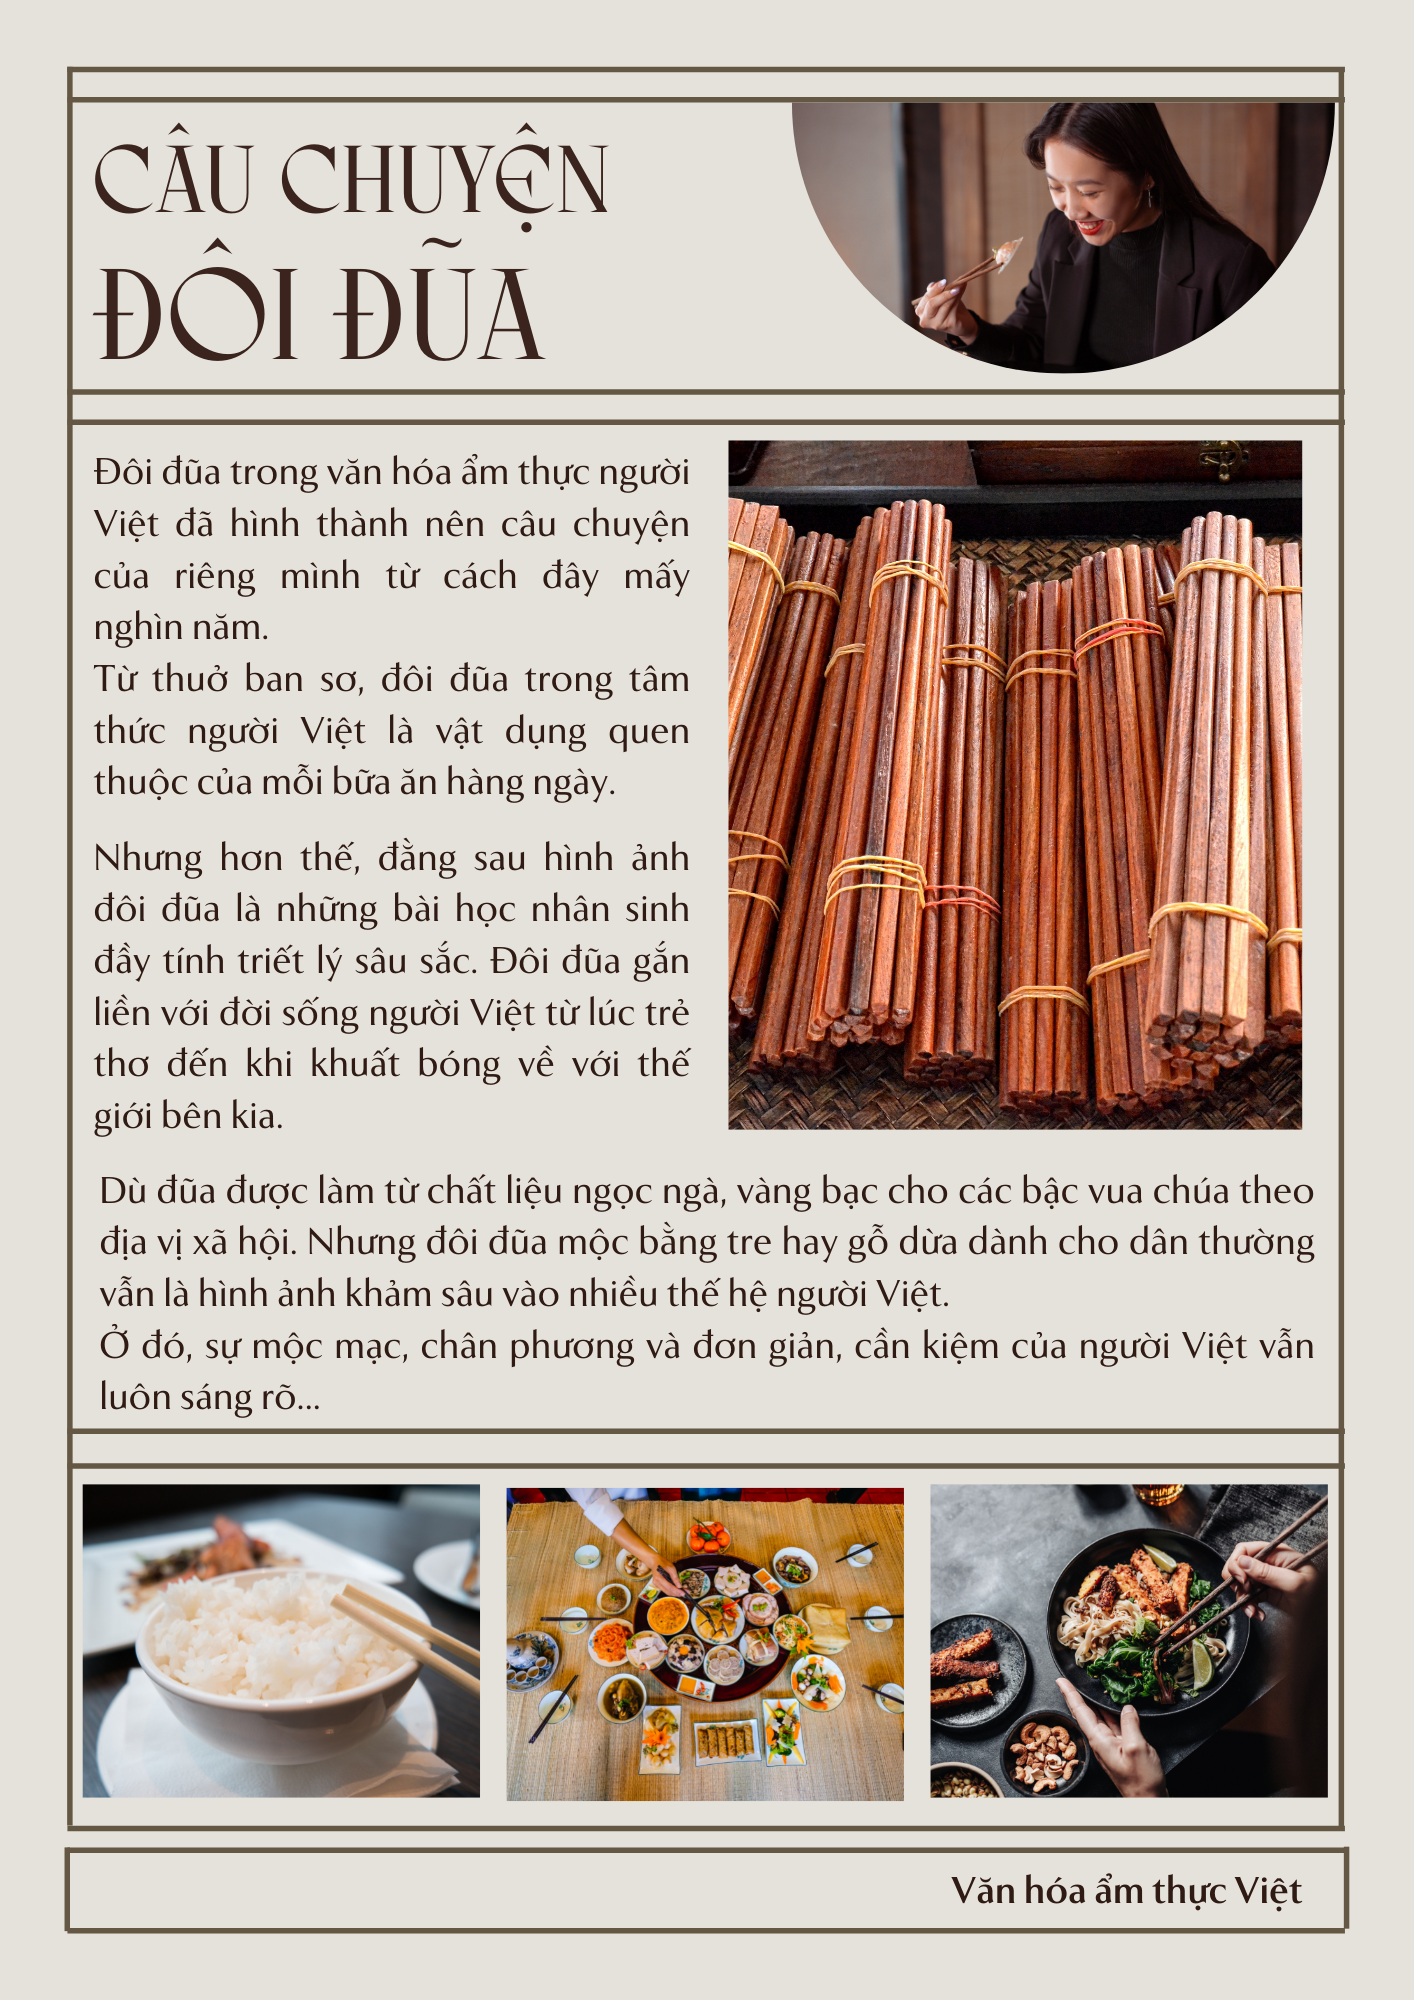 Đôi đũa trên bàn ăn Việt đem lại vẻ đẹp đặc trưng của văn hóa Việt Nam. Chúng tạo ra không gian chuyên nghiệp và thanh lịch, là nét đặc trưng của nền văn hóa phương Đông. Hãy trang trí bàn ăn của mình với đôi đũa truyền thống Việt để khoác lên không gian ẩm thực sự sang trọng và độc đáo.